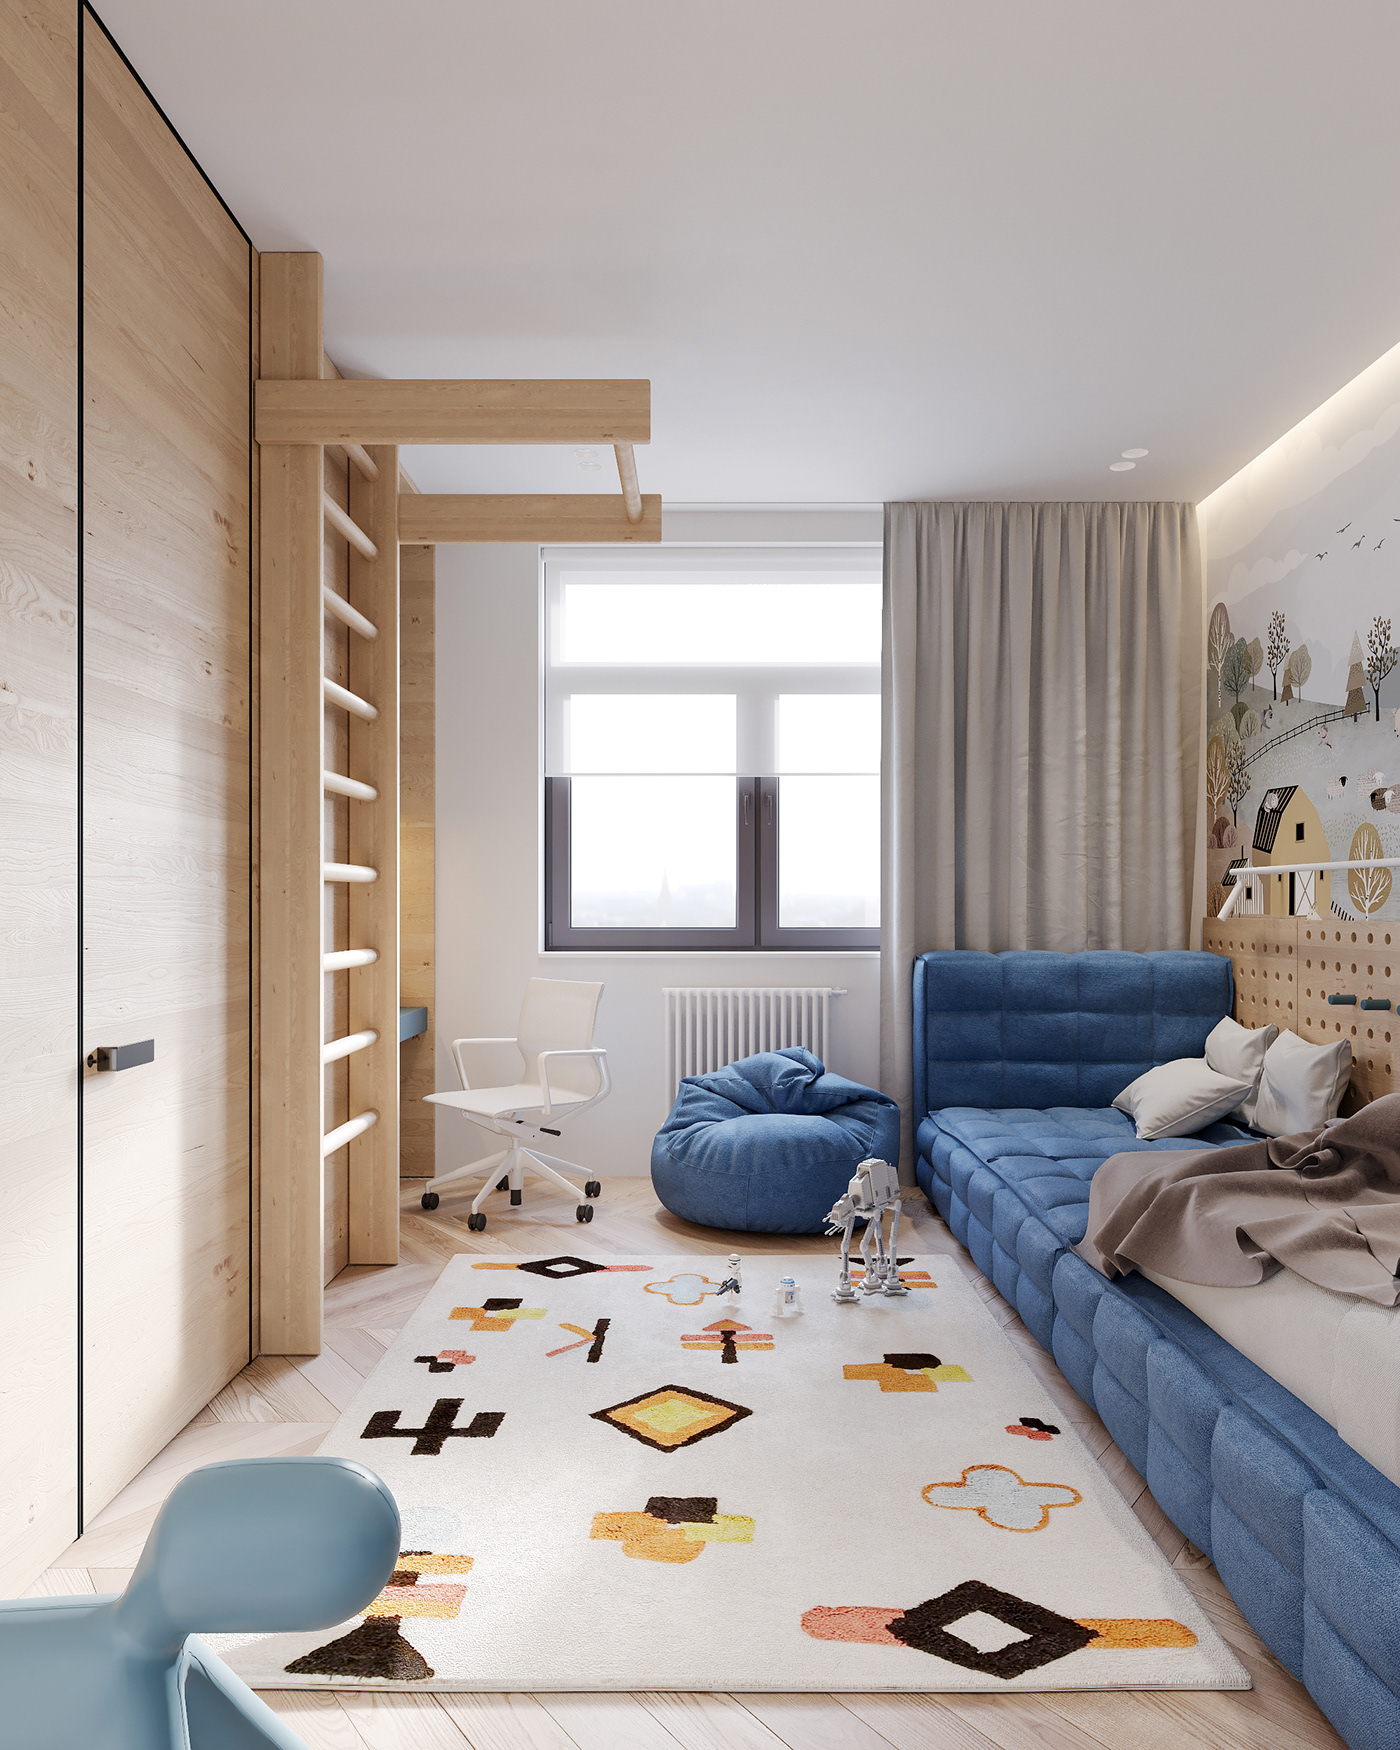 apartmentinterior architecture CG coronarenderer design interiordesign livingroom Render visualization